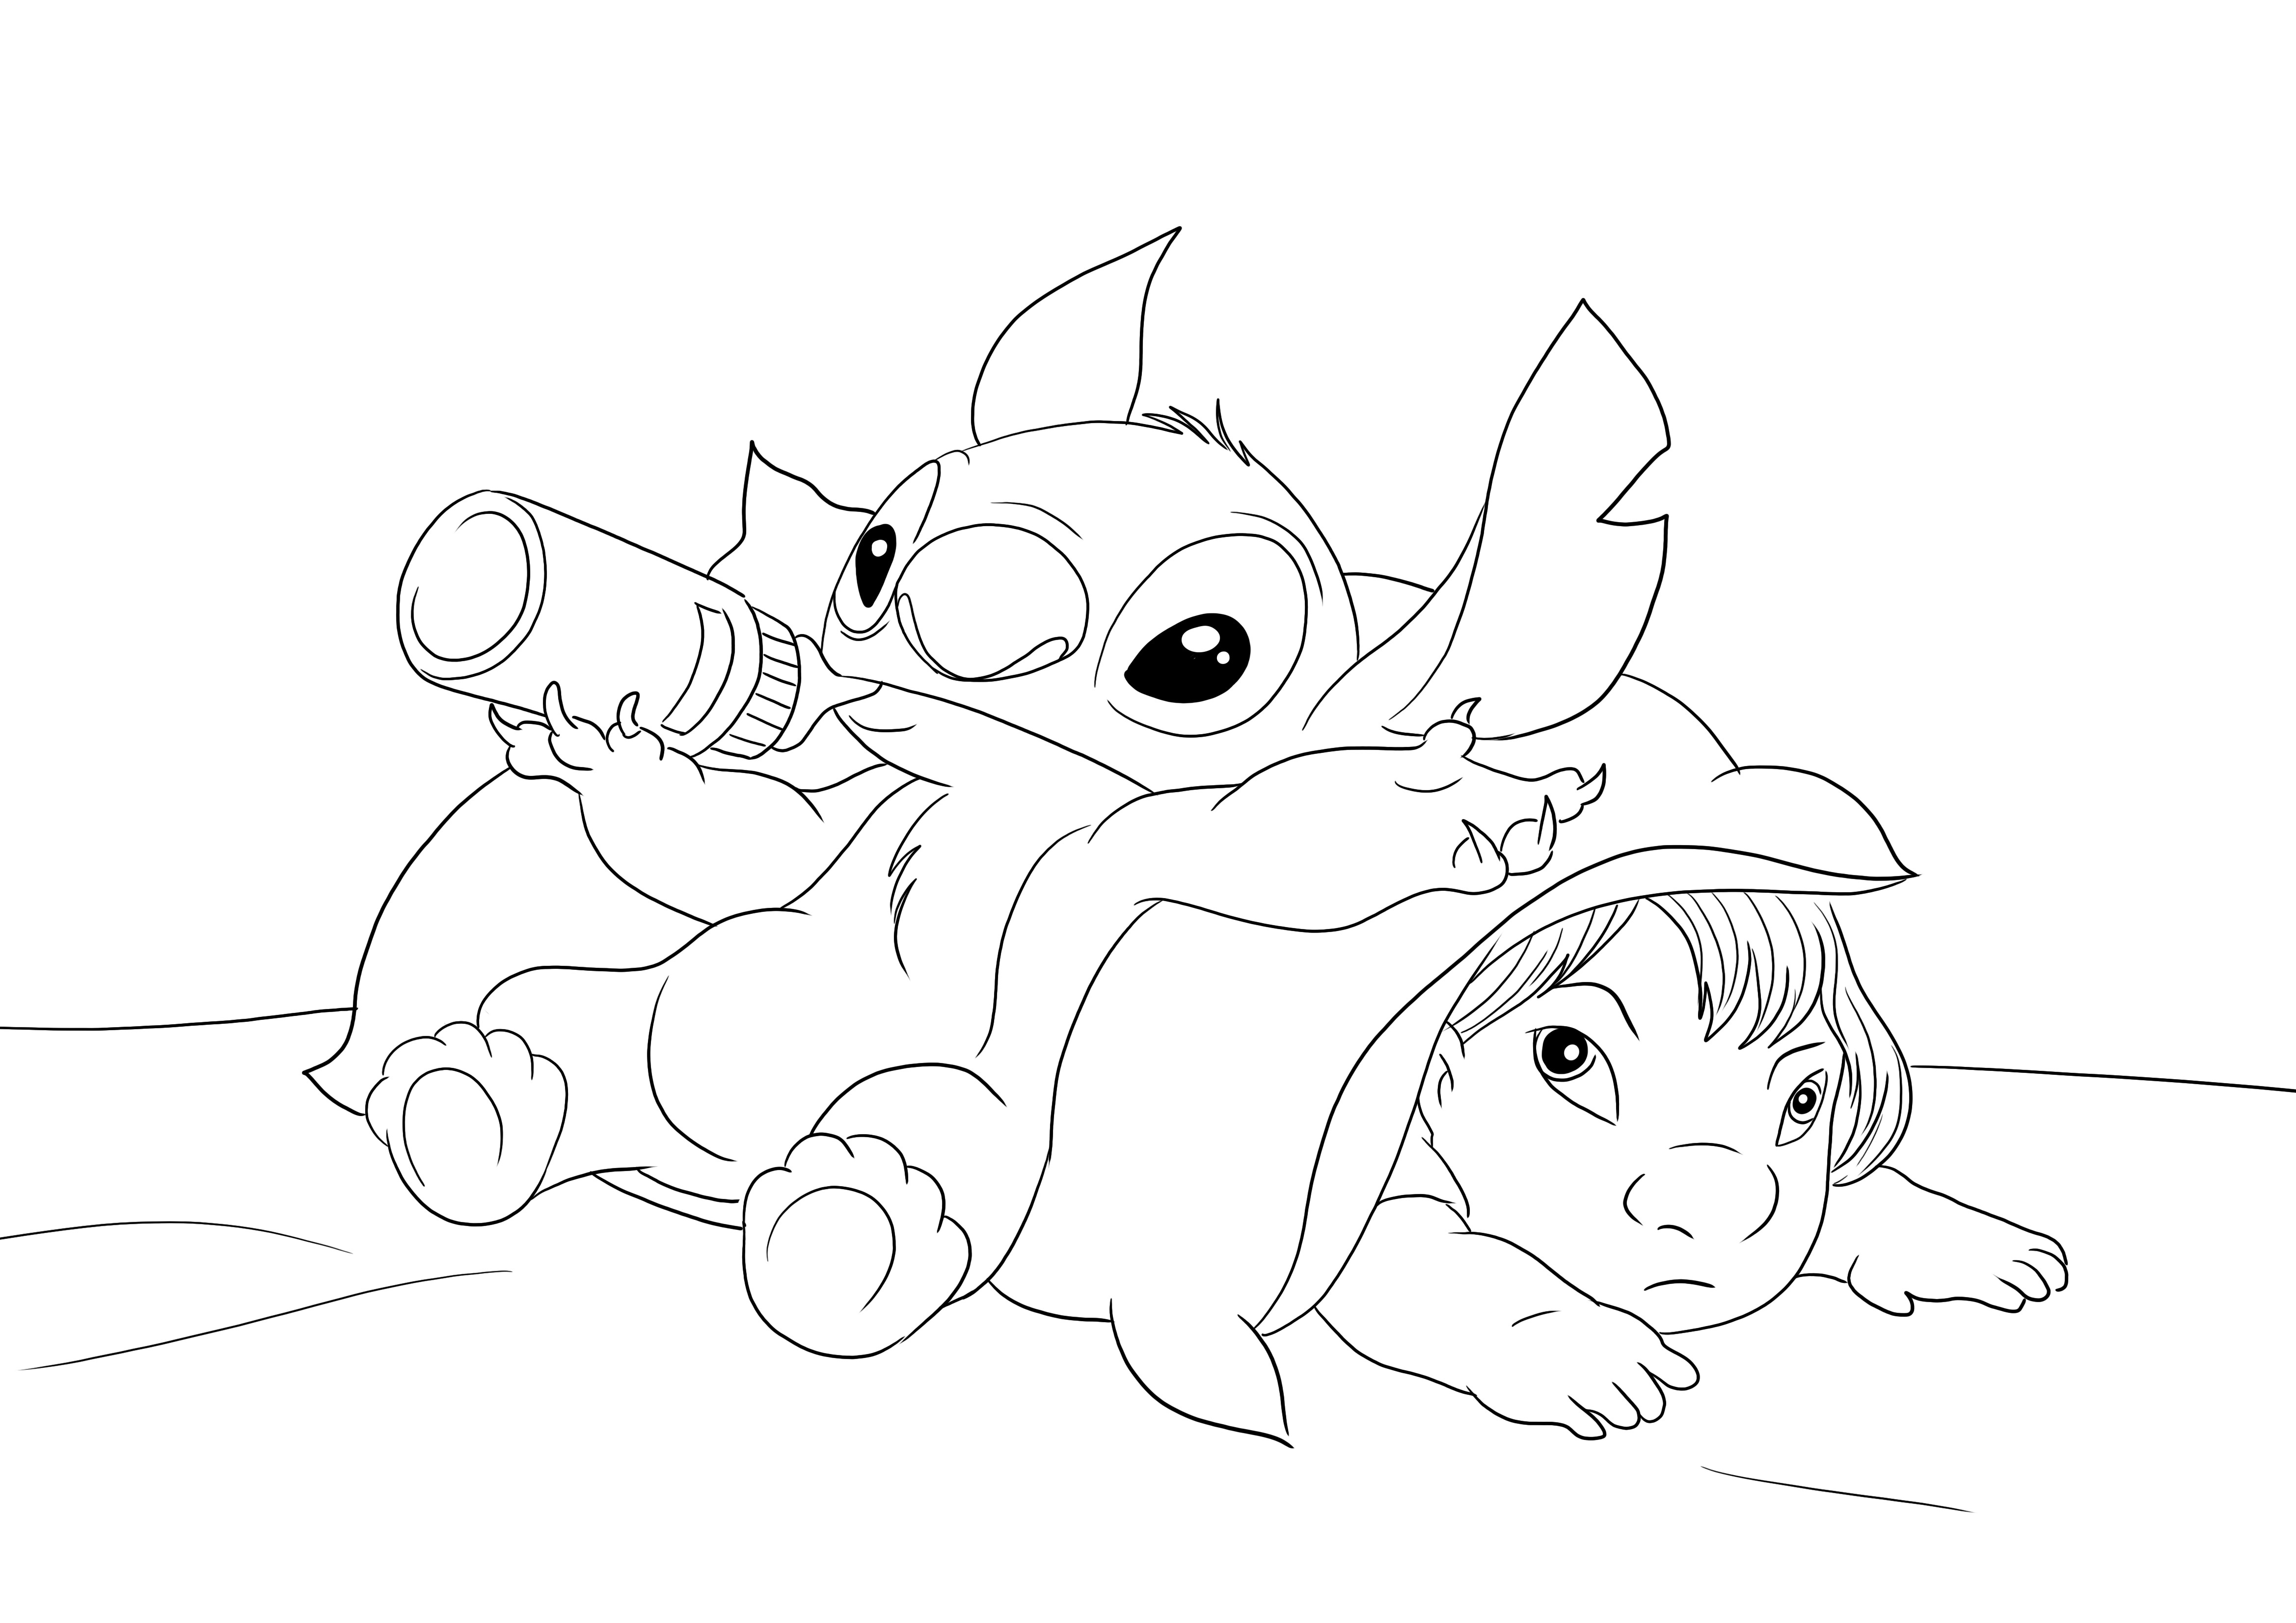 Baby Stitch und Lilo zum kostenlosen Download und Ausmalen für Kinder